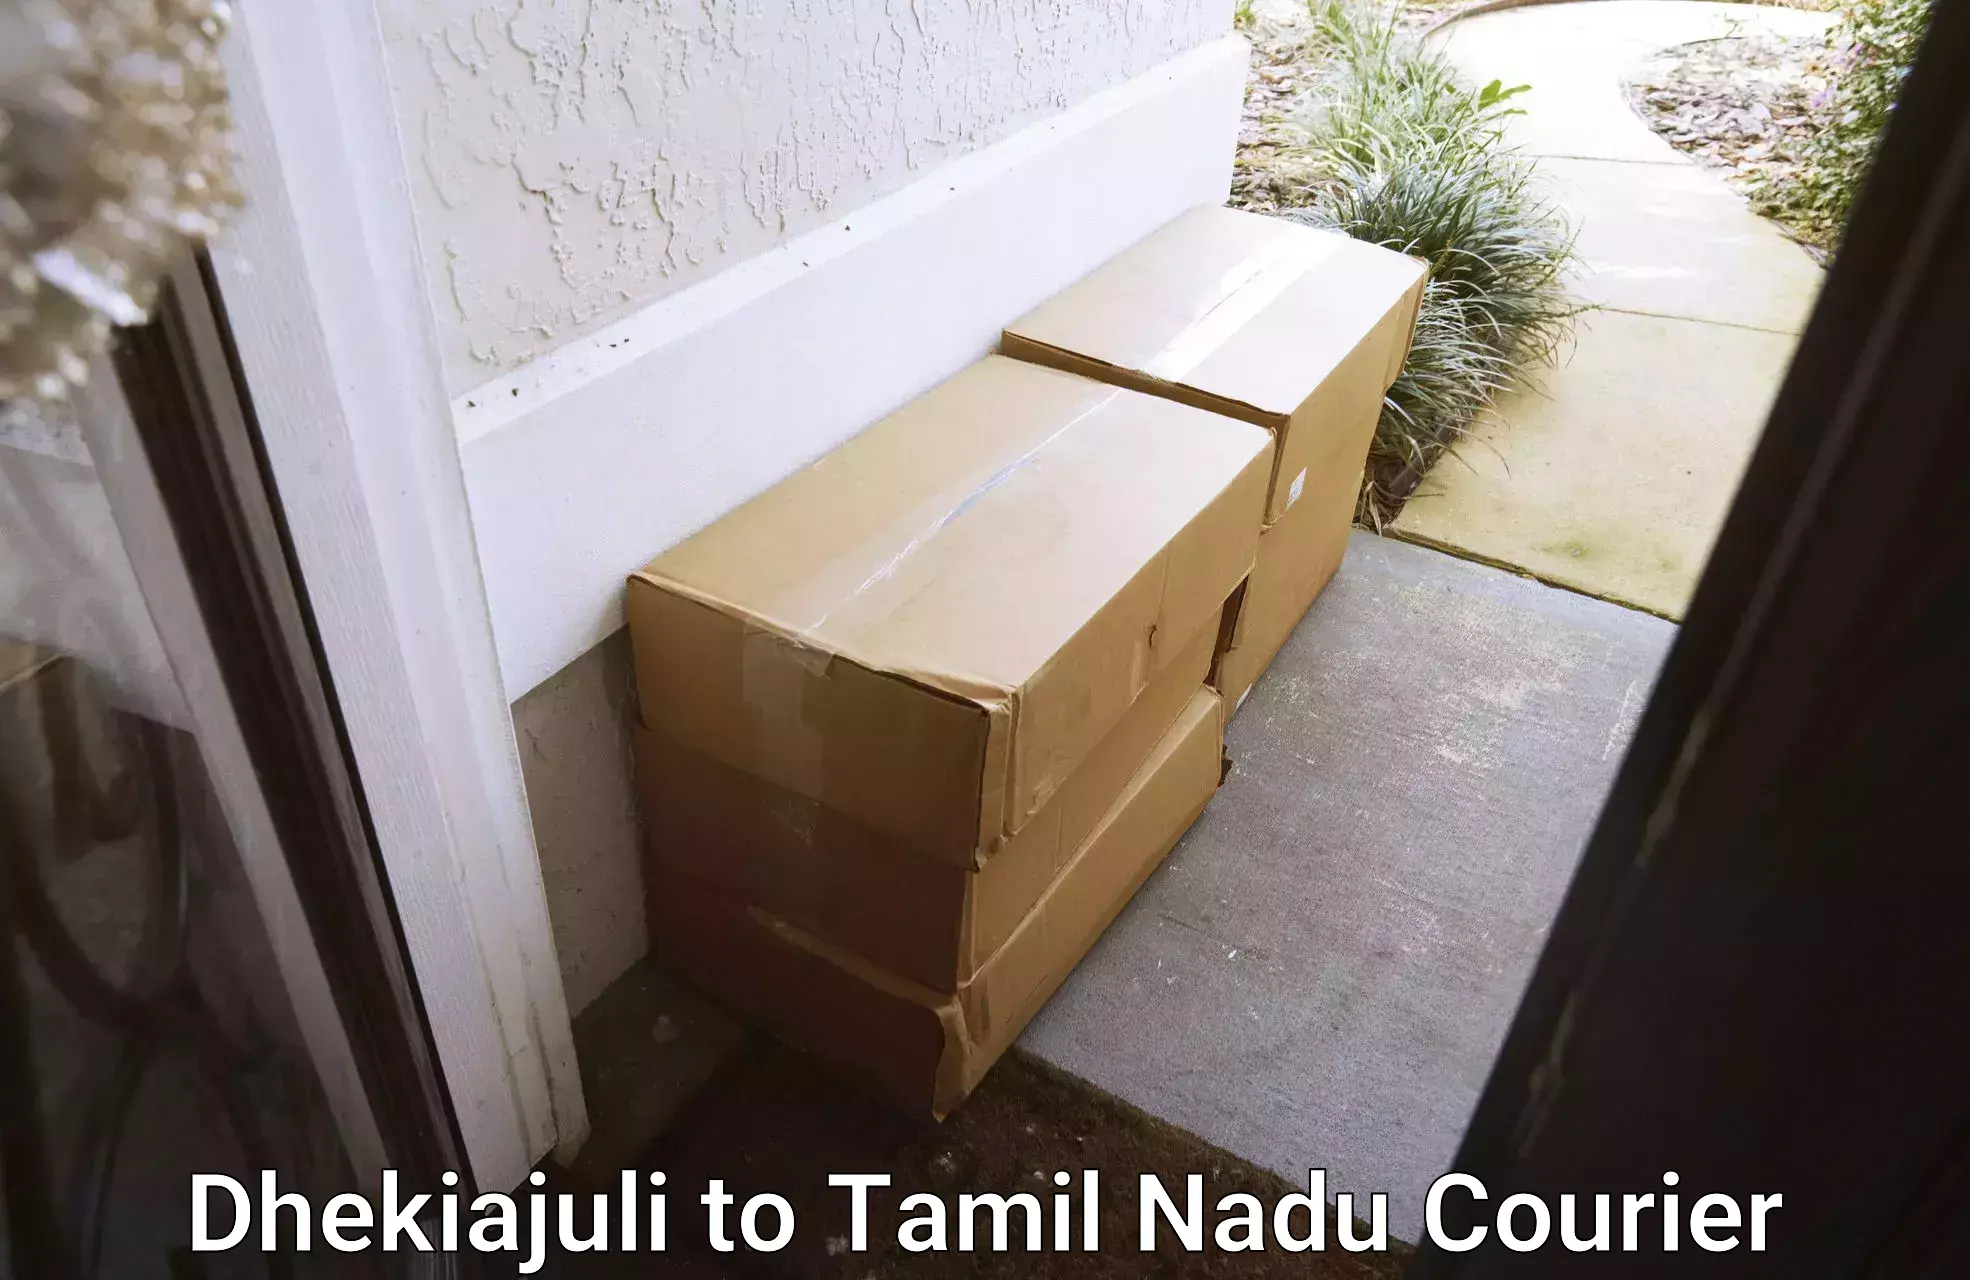 High-performance logistics Dhekiajuli to Tamil Nadu